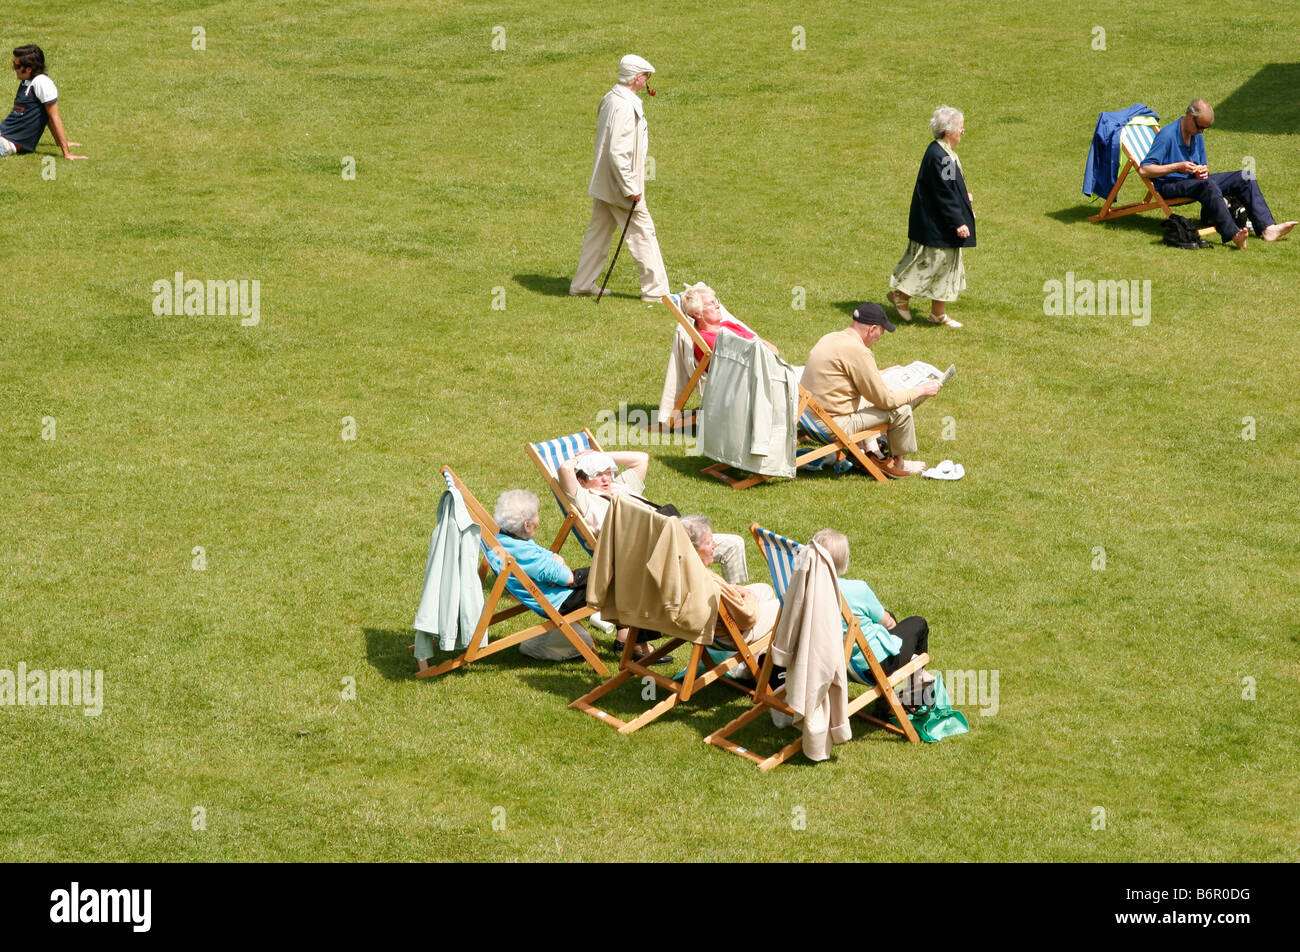 Menschen sitzen auf Liegestühlen und gehen auf dem Rasen im Park Garten an einem sonnigen Sonntag Nachmittag Stockfoto